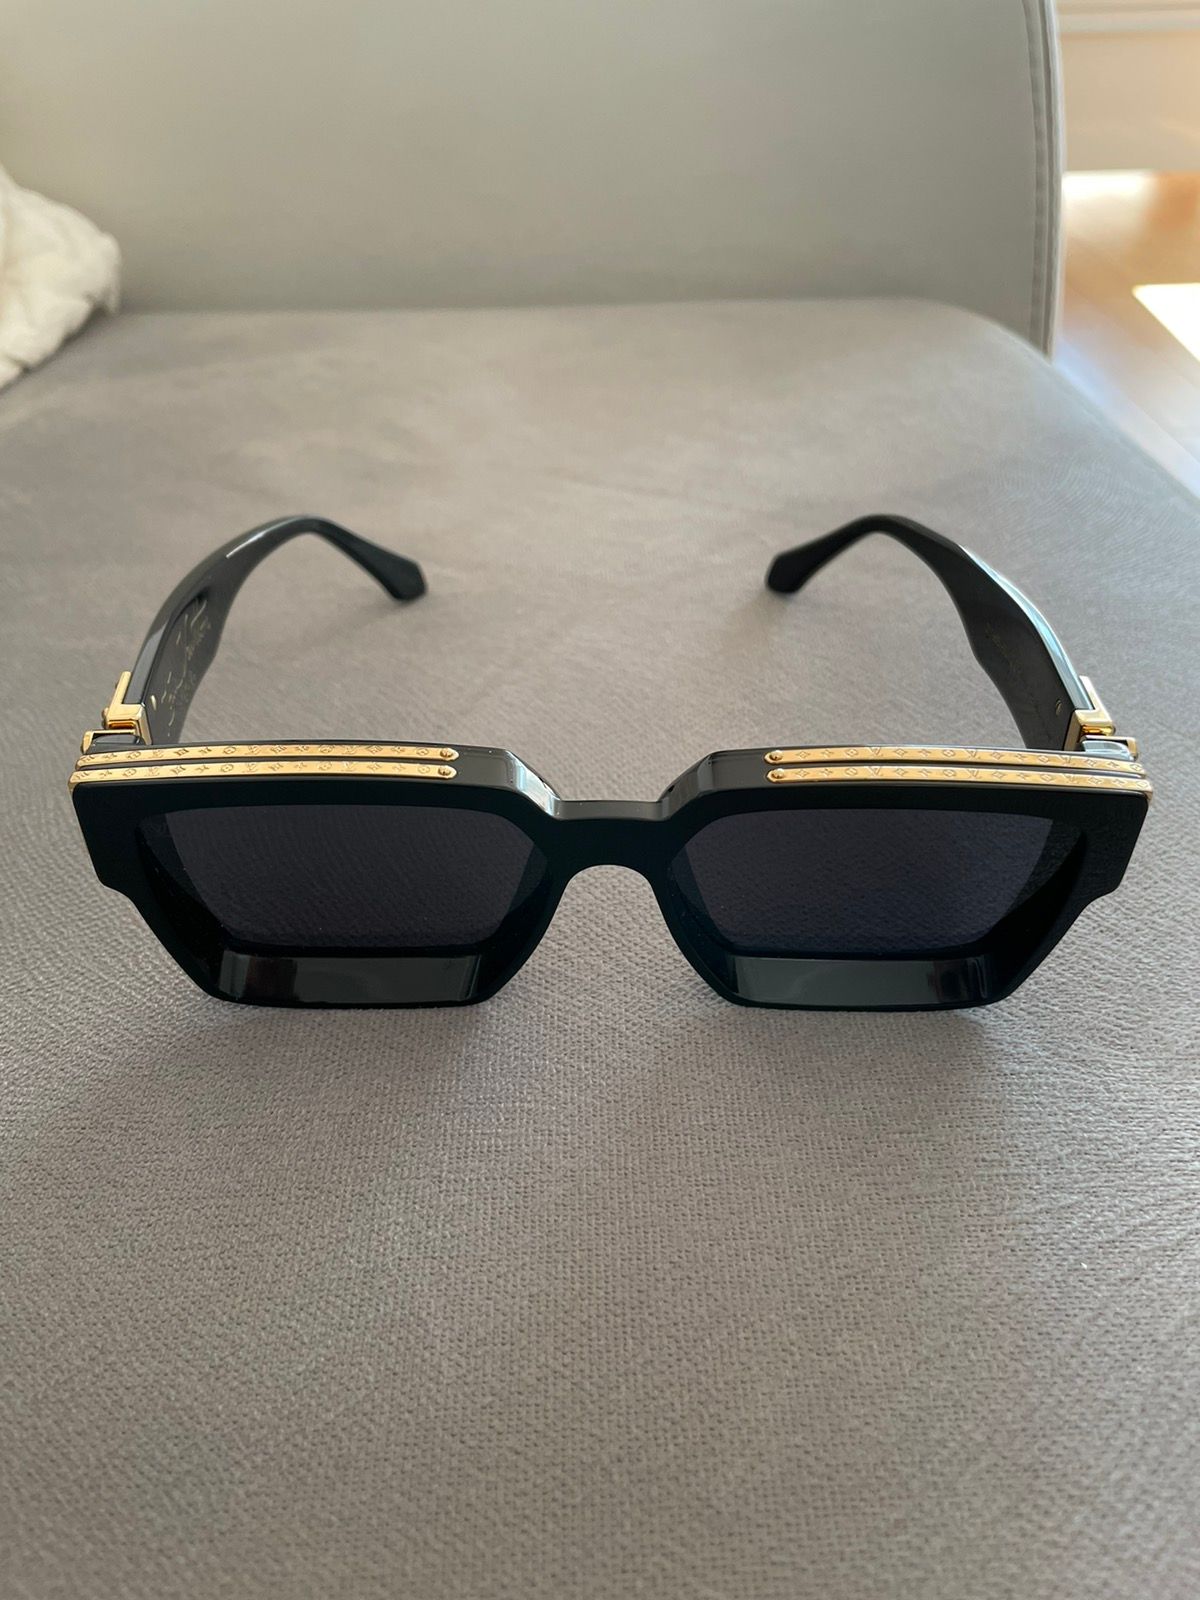 Louis Vuitton x Virgil Abloh 1.1 Millionaire Sunglasses - Z1165Eの